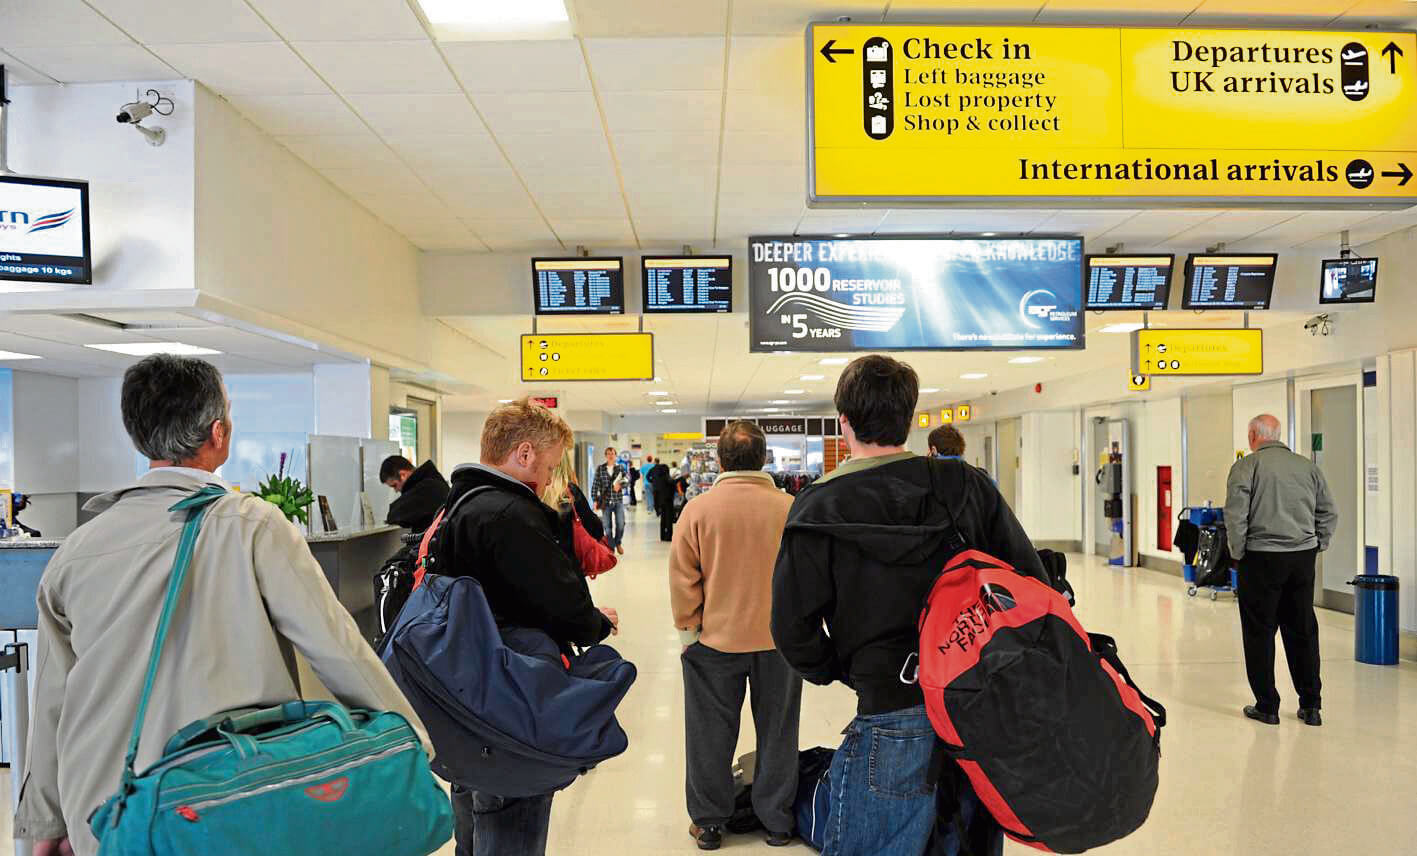 Aberdeen Airport Departures